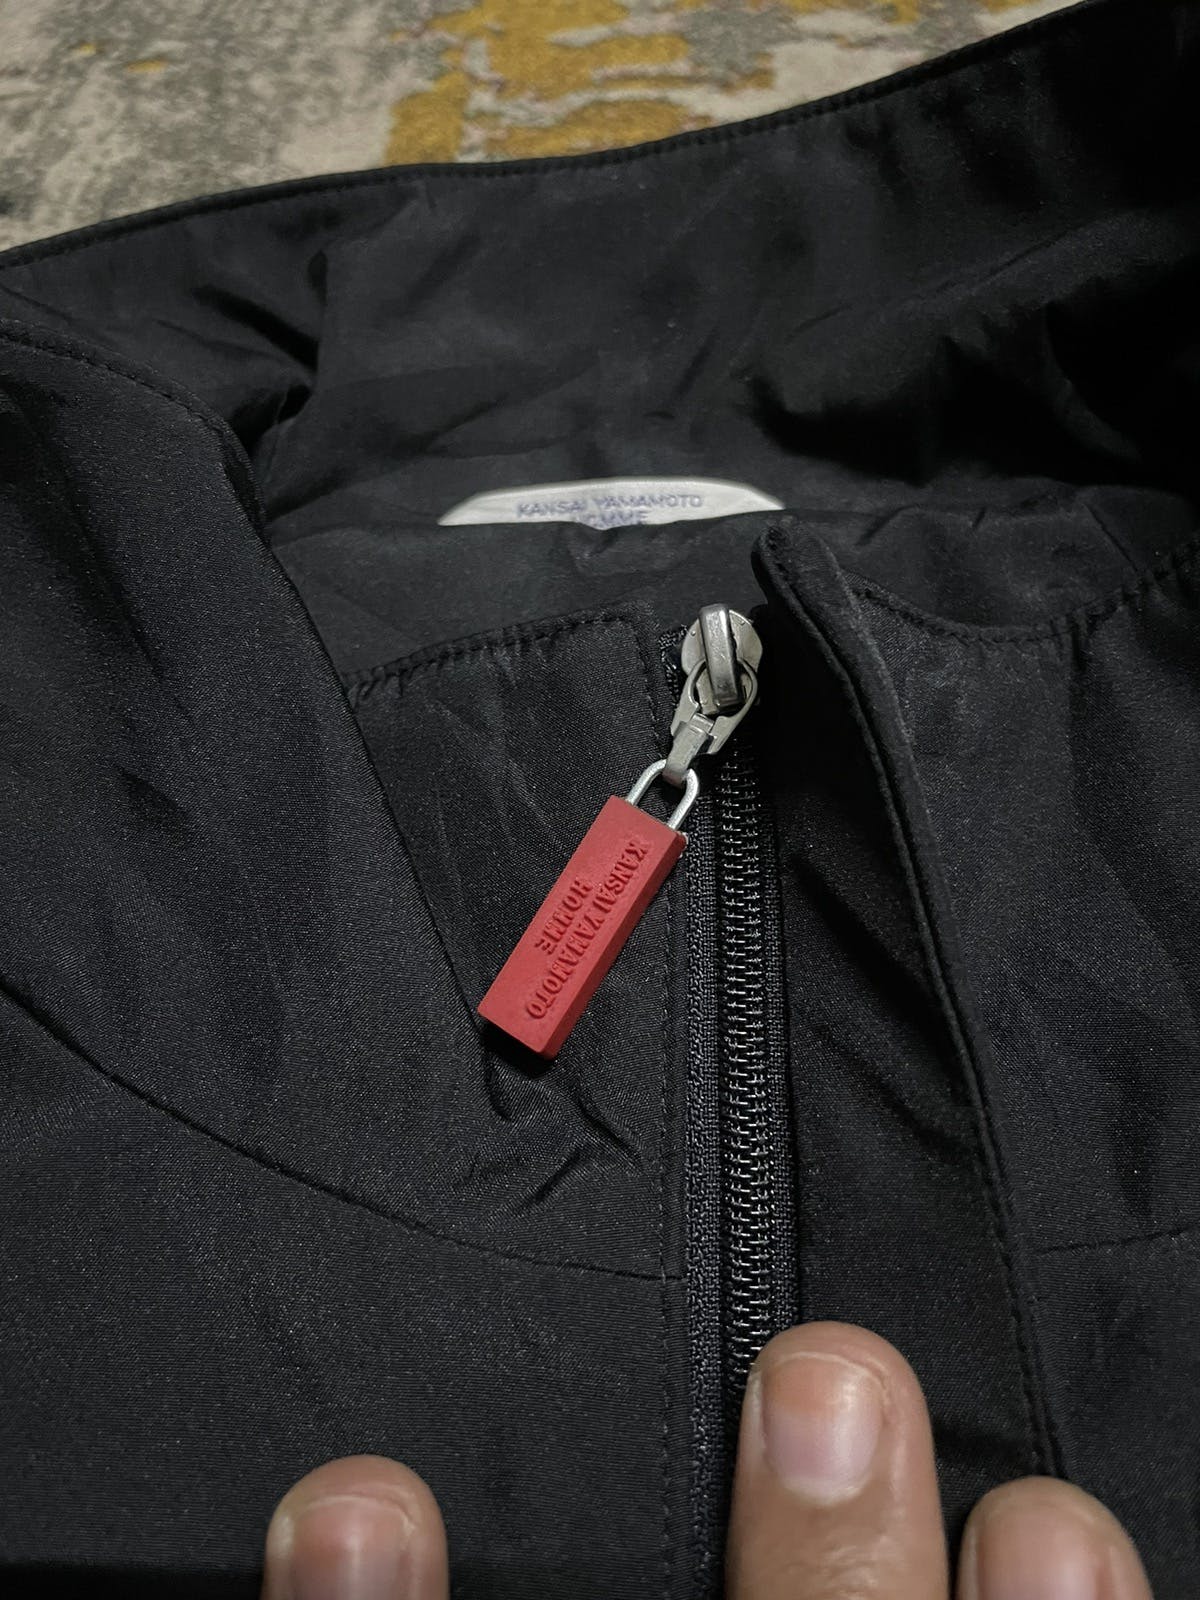 Japanese Brand - 💥Vintage Kansai Yamamoto Homme Zipper Jacket